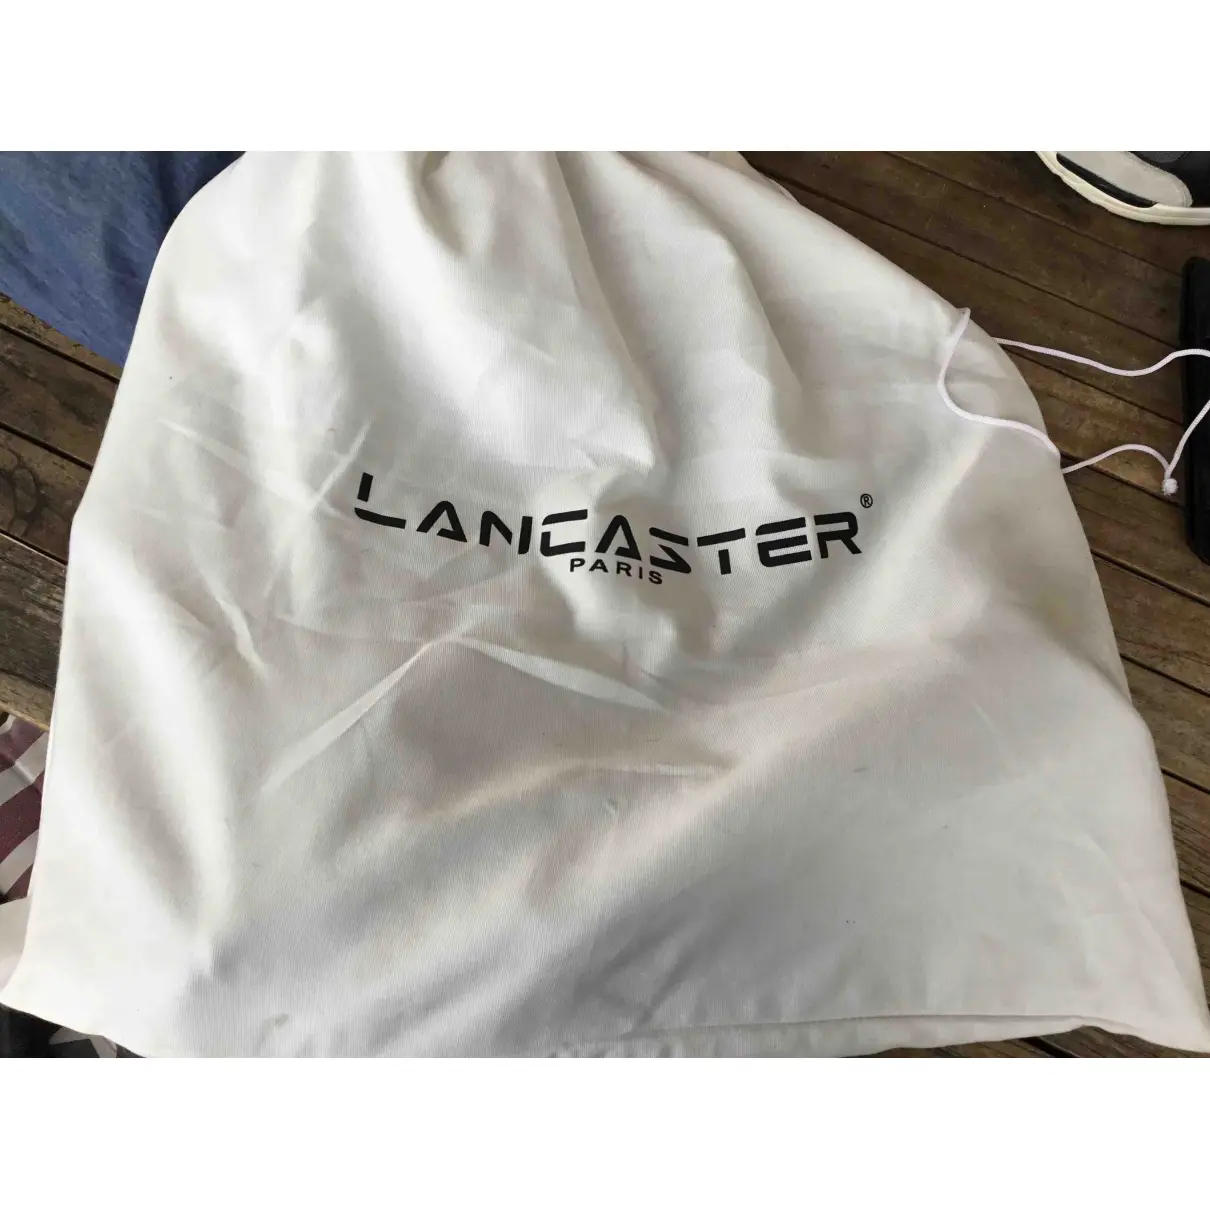 Leather satchel Lancaster